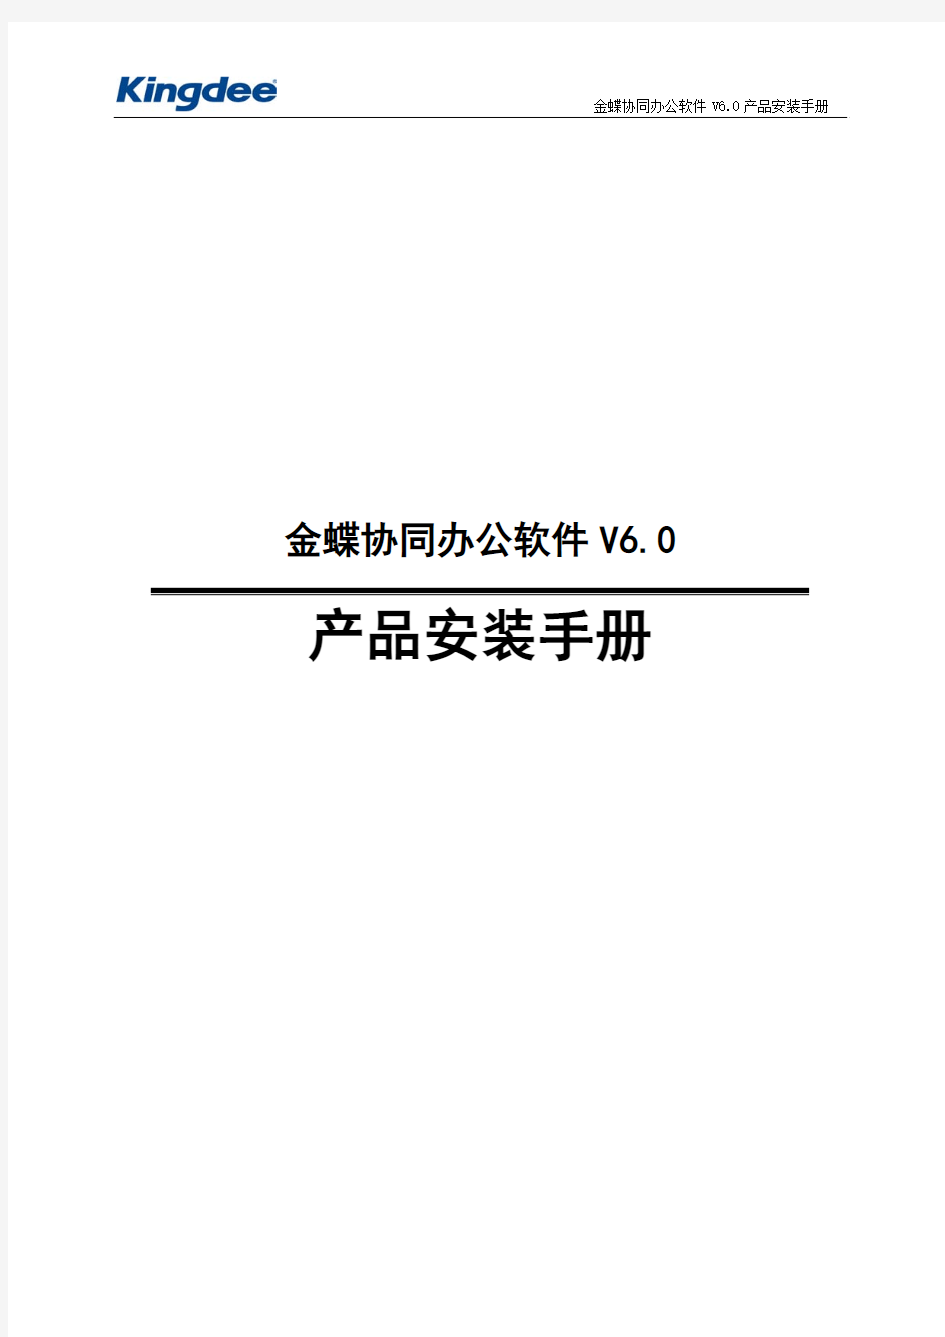 金蝶协同办公软件V6.0产品安装手册